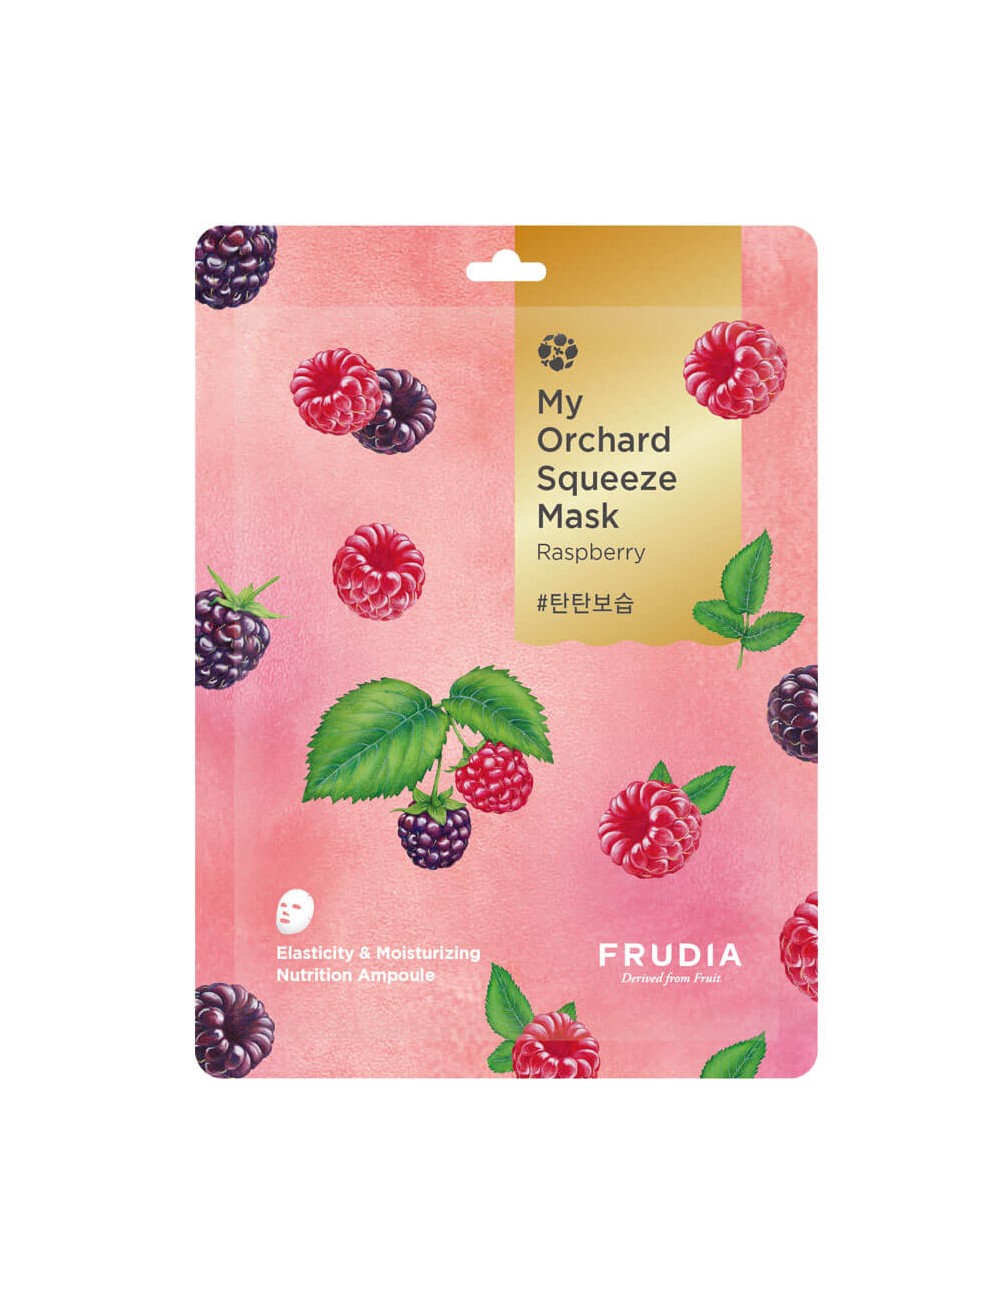 Cosmética Coreana al mejor precio: My Orchard Squeeze Mask Raspberry Firmeza y Elasticidad de Frudia en Skin Thinks - Piel Seca